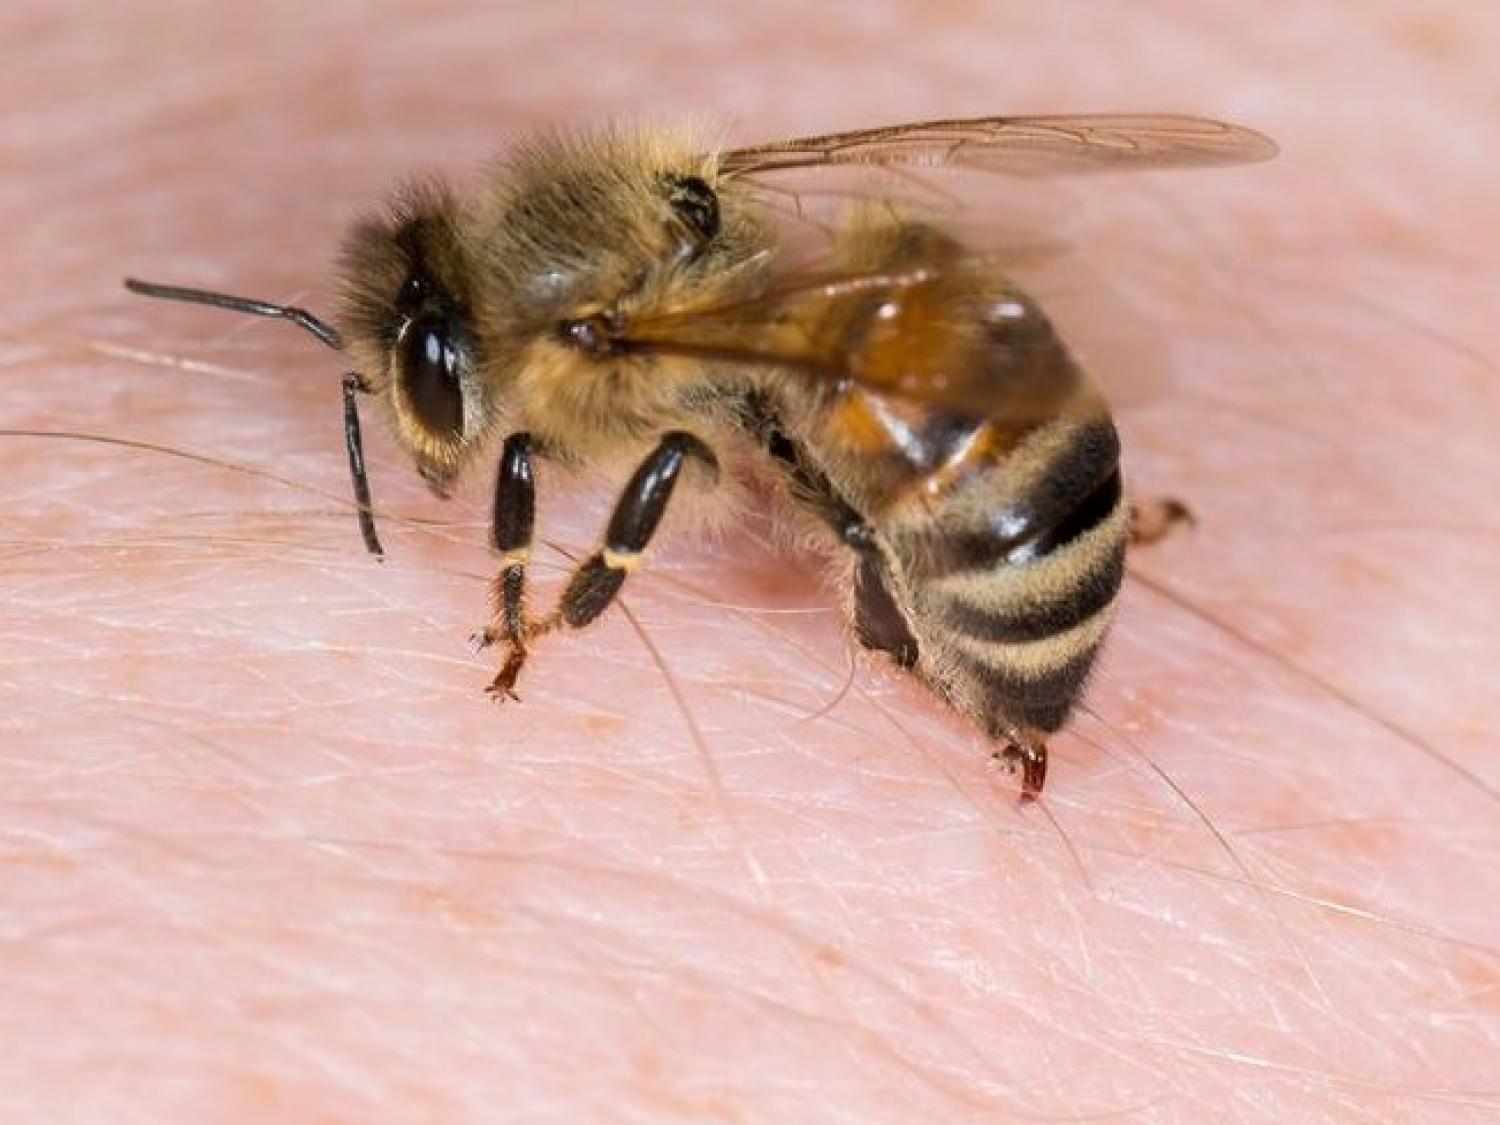 A méh- és darázscsípés veszélyeiről